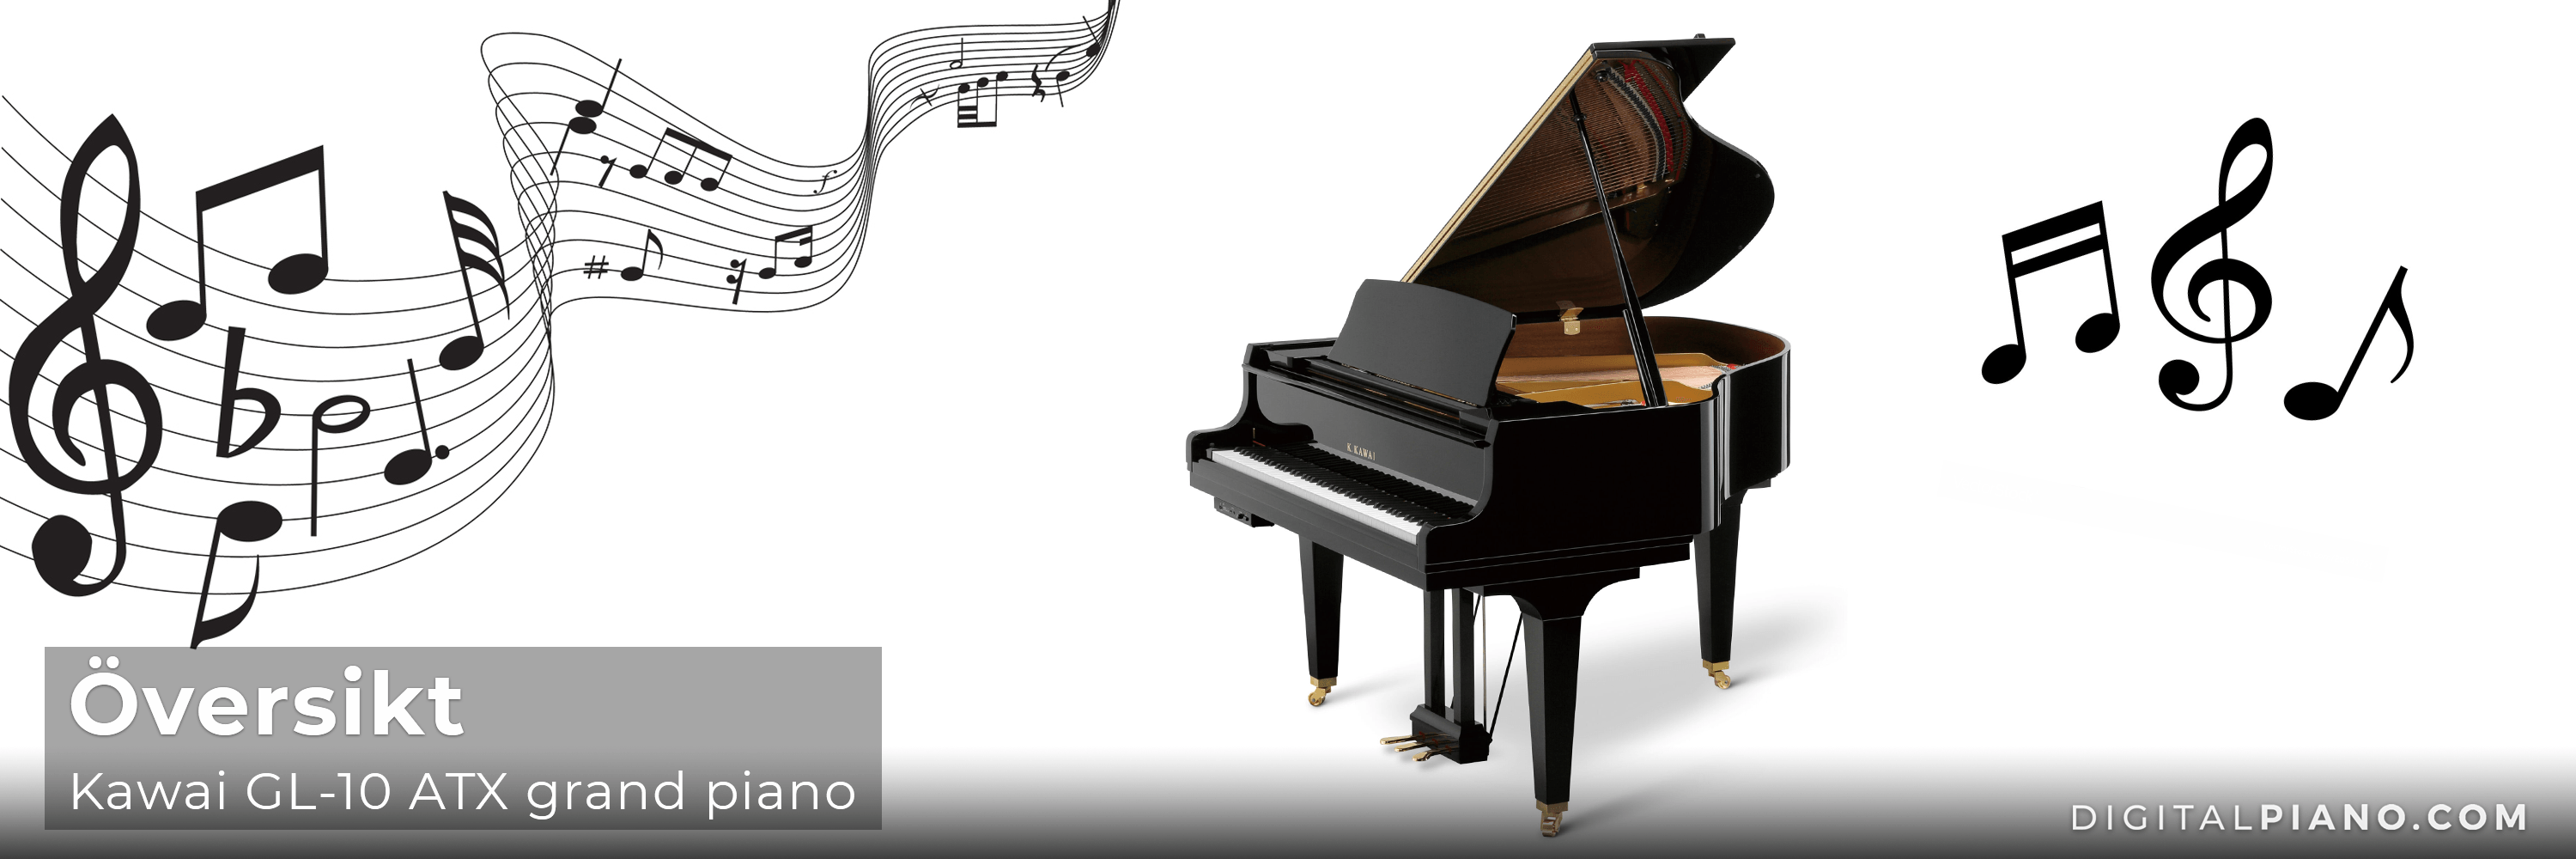 Översikt - Kawai GL-10 ATX grand piano